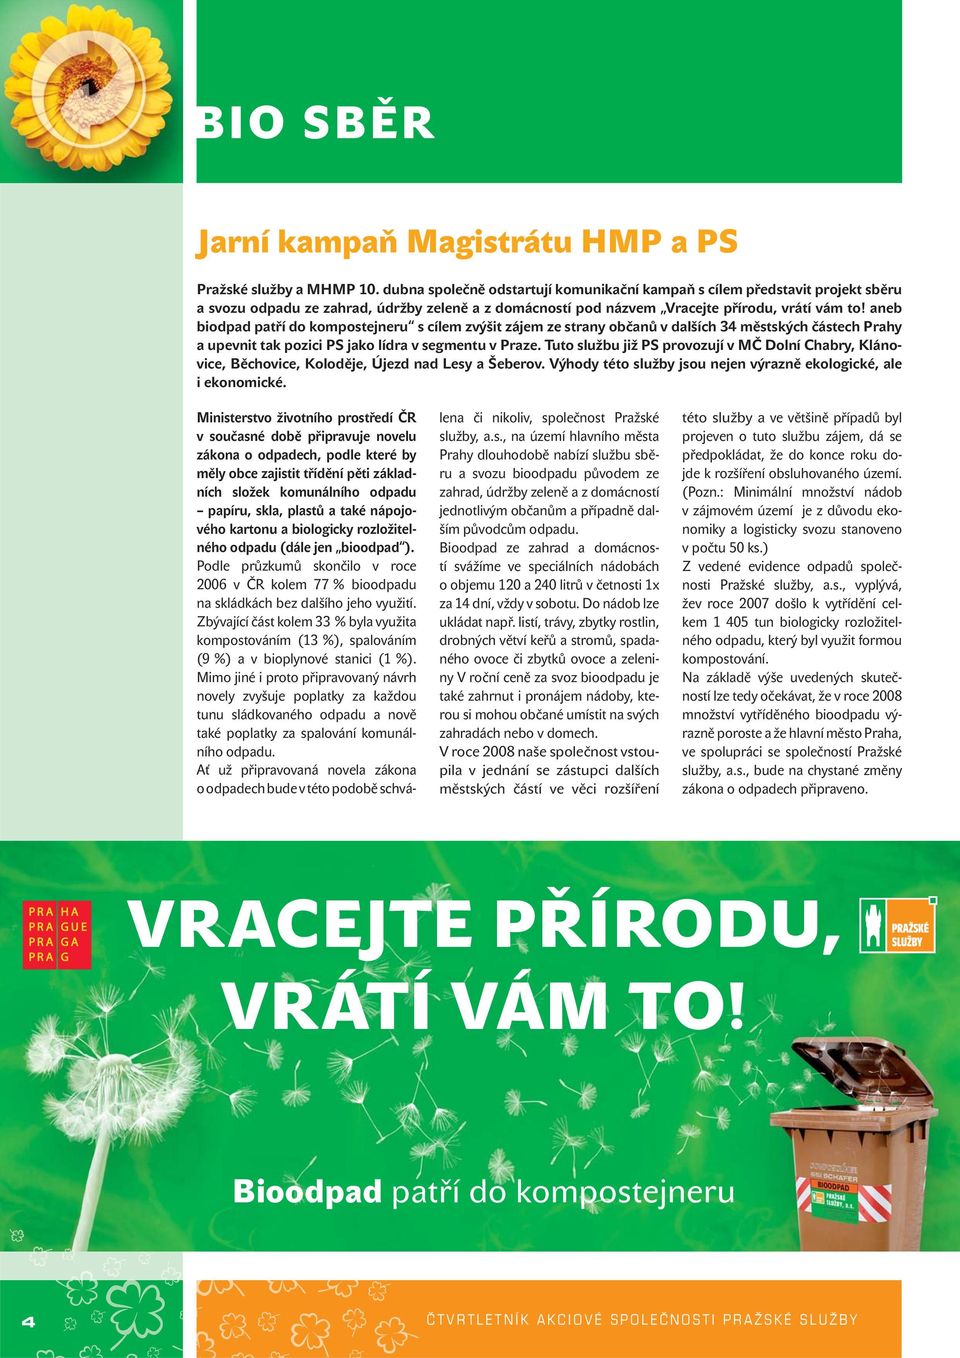 aneb biodpad patří do kompostejneru s cílem zvýšit zájem ze strany občanů v dalších 34 městských částech Prahy a upevnit tak pozici PS jako lídra v segmentu v Praze.